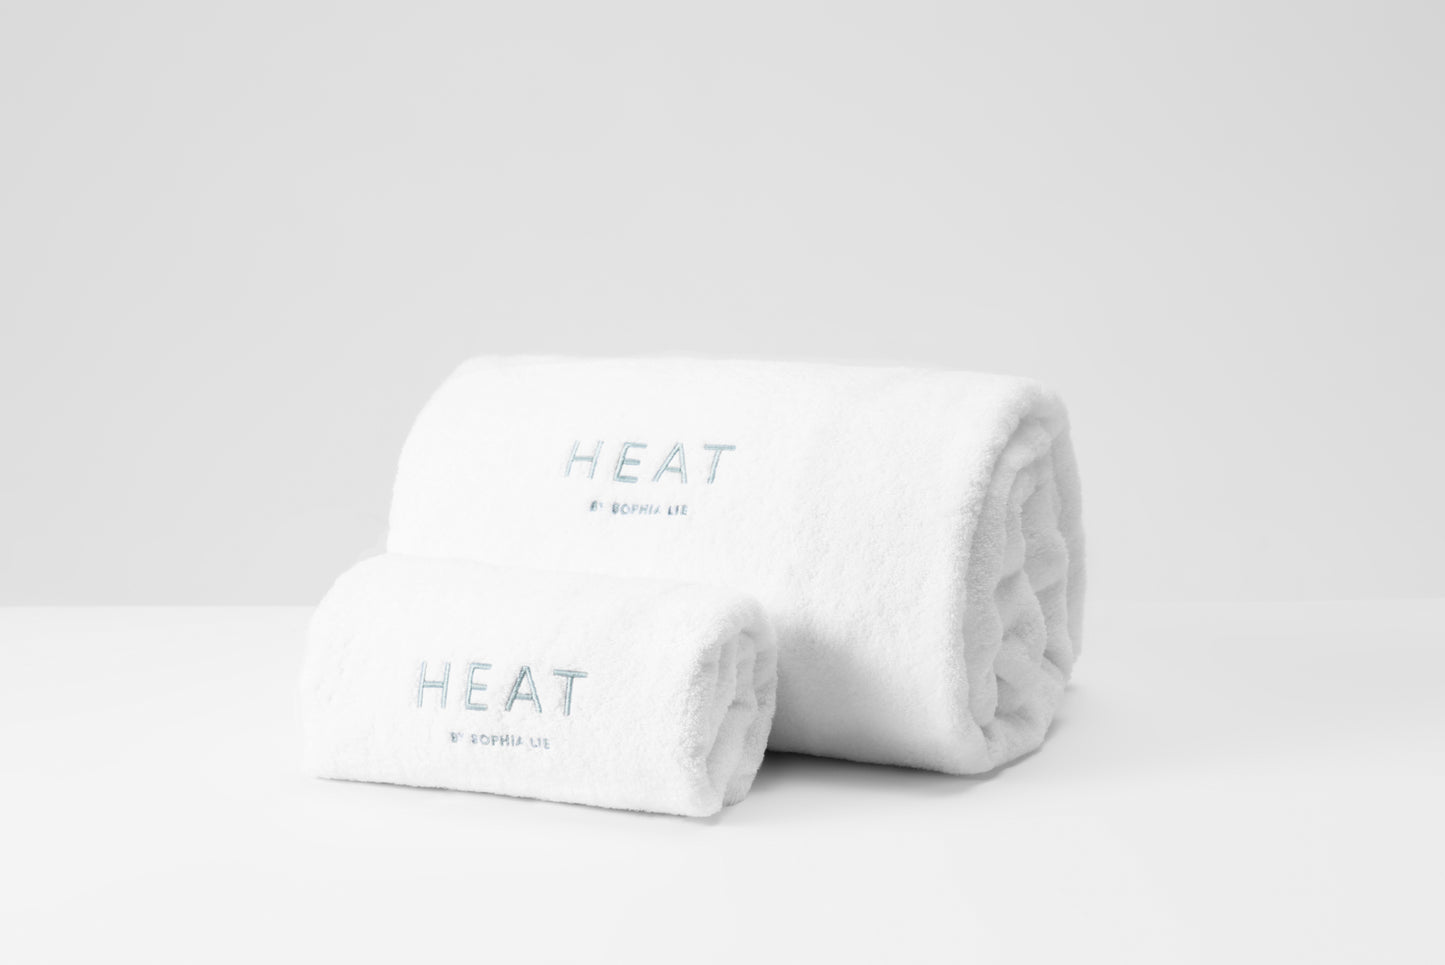 HEAT Cotton Insert & Pillow Set™